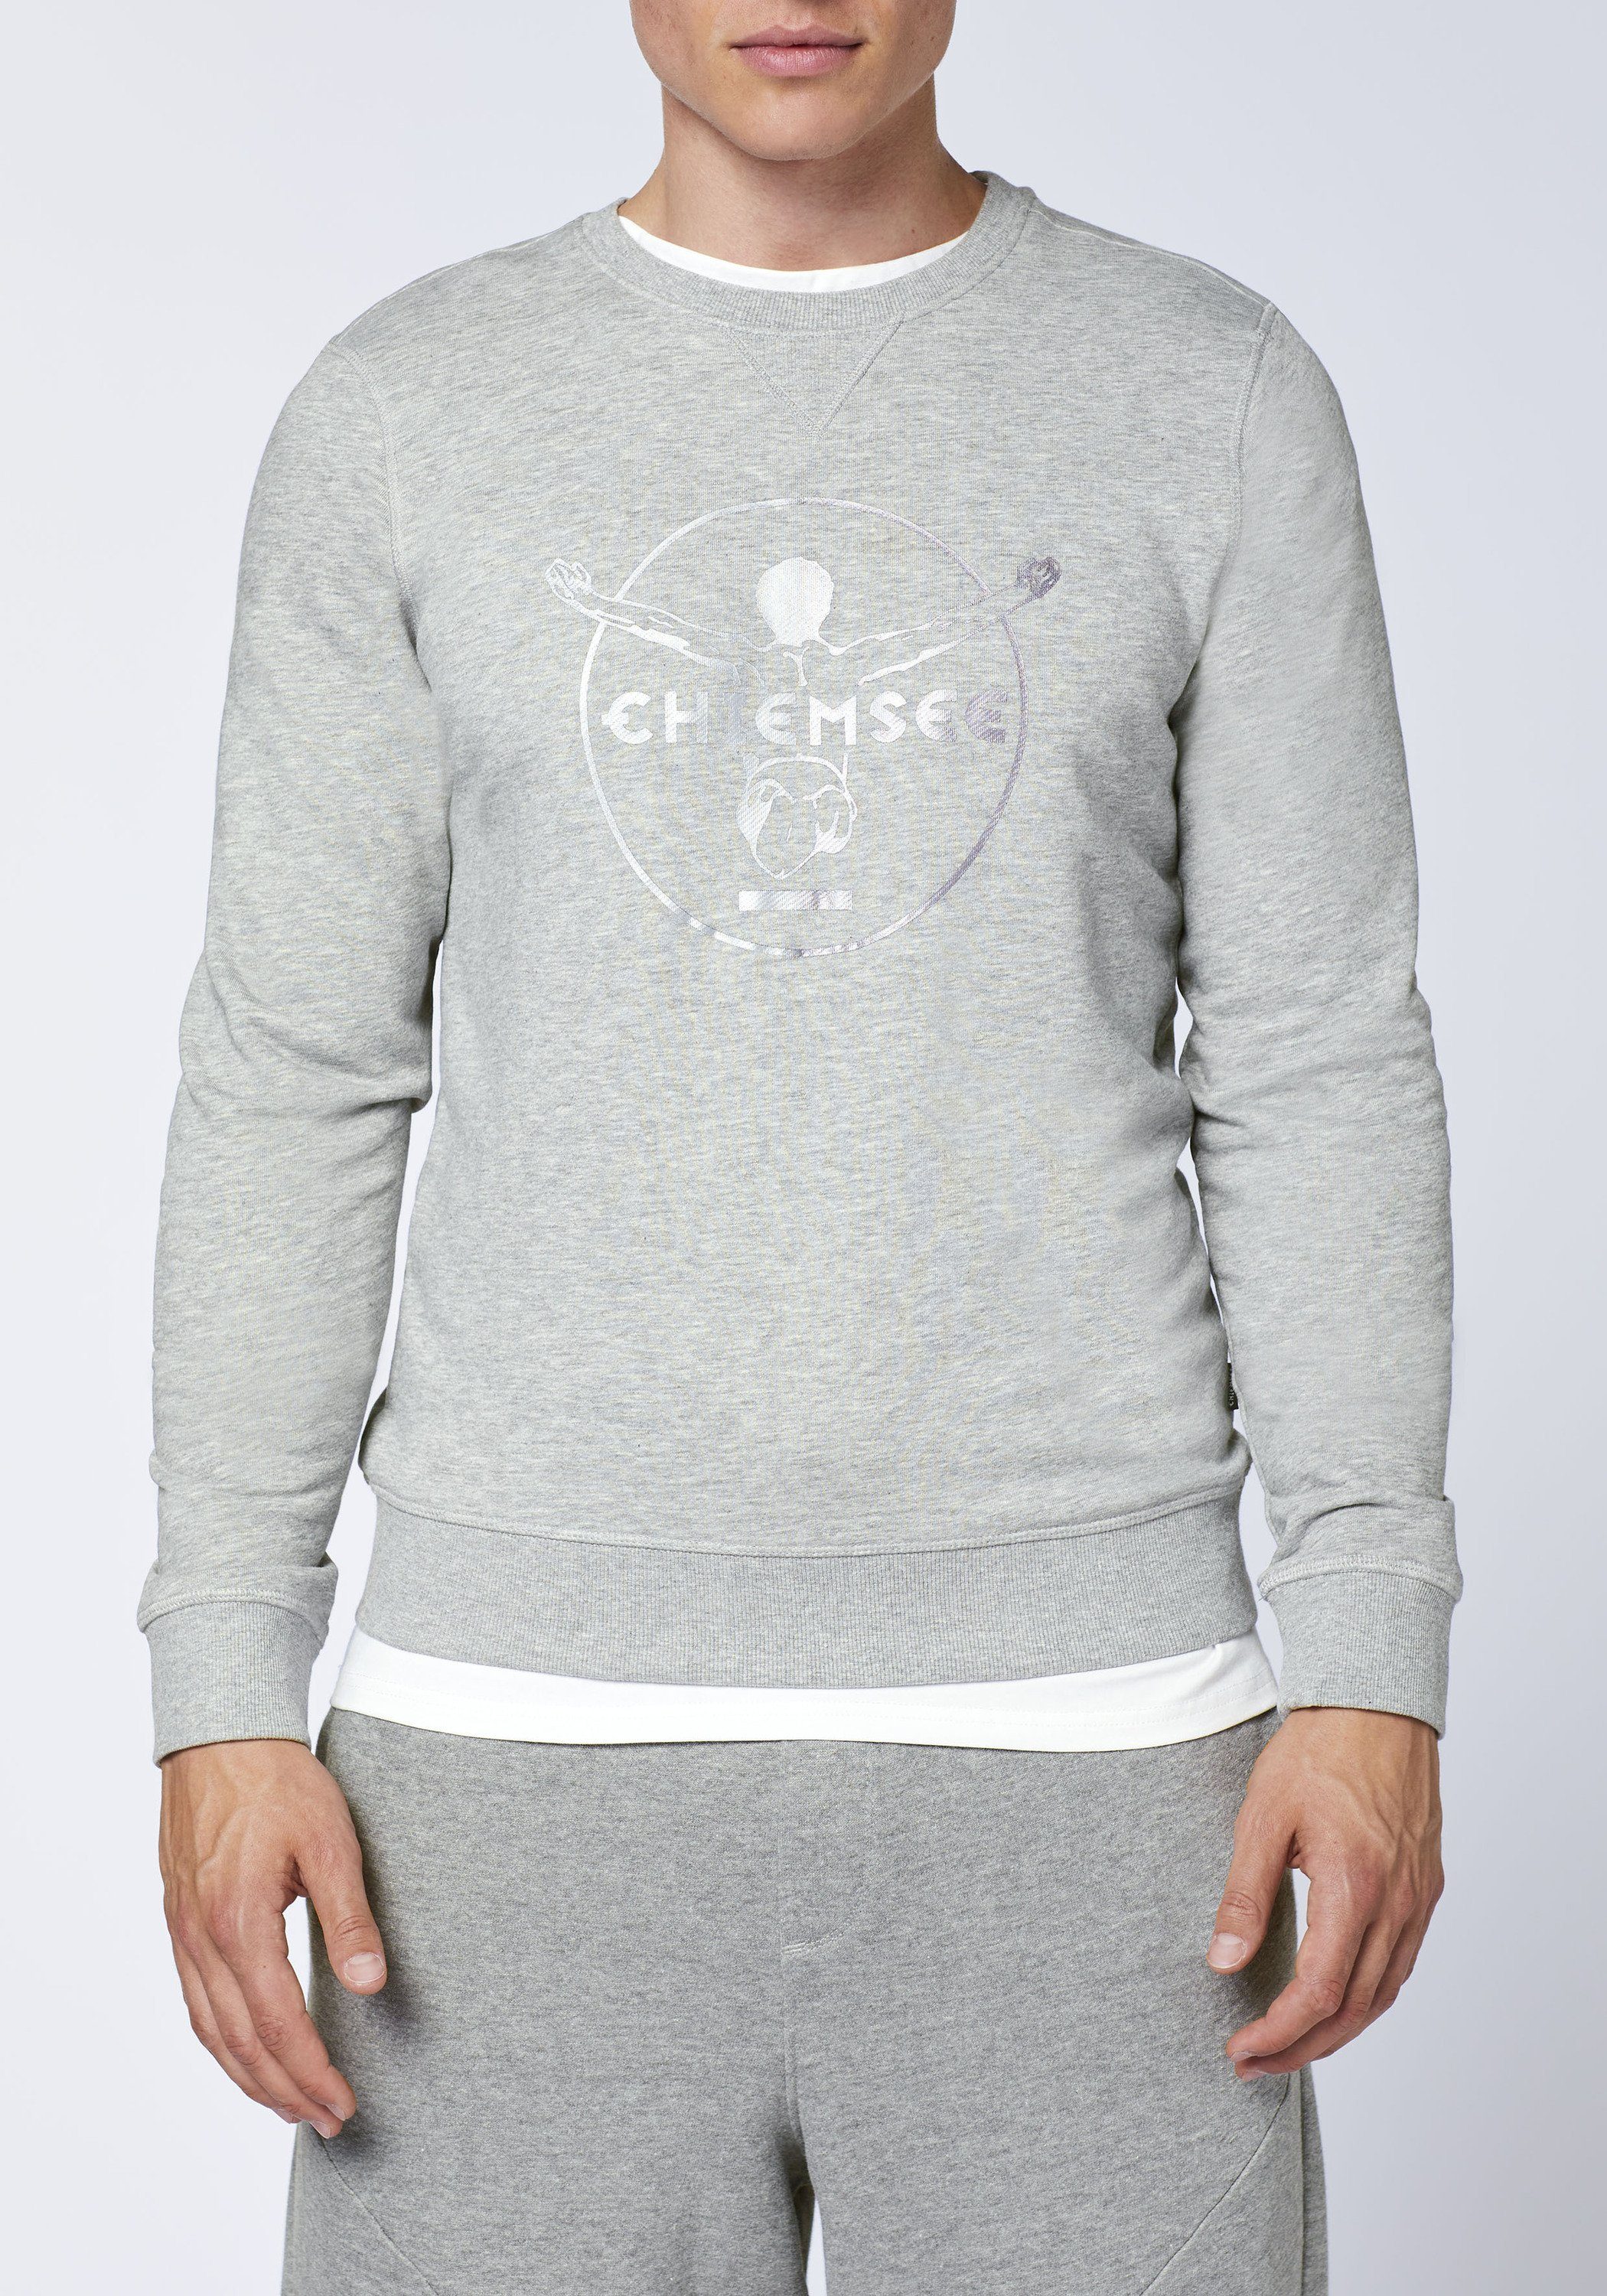 blau Chiemsee grau/hell im Sweatshirt mittel Label-Look Sweater 1